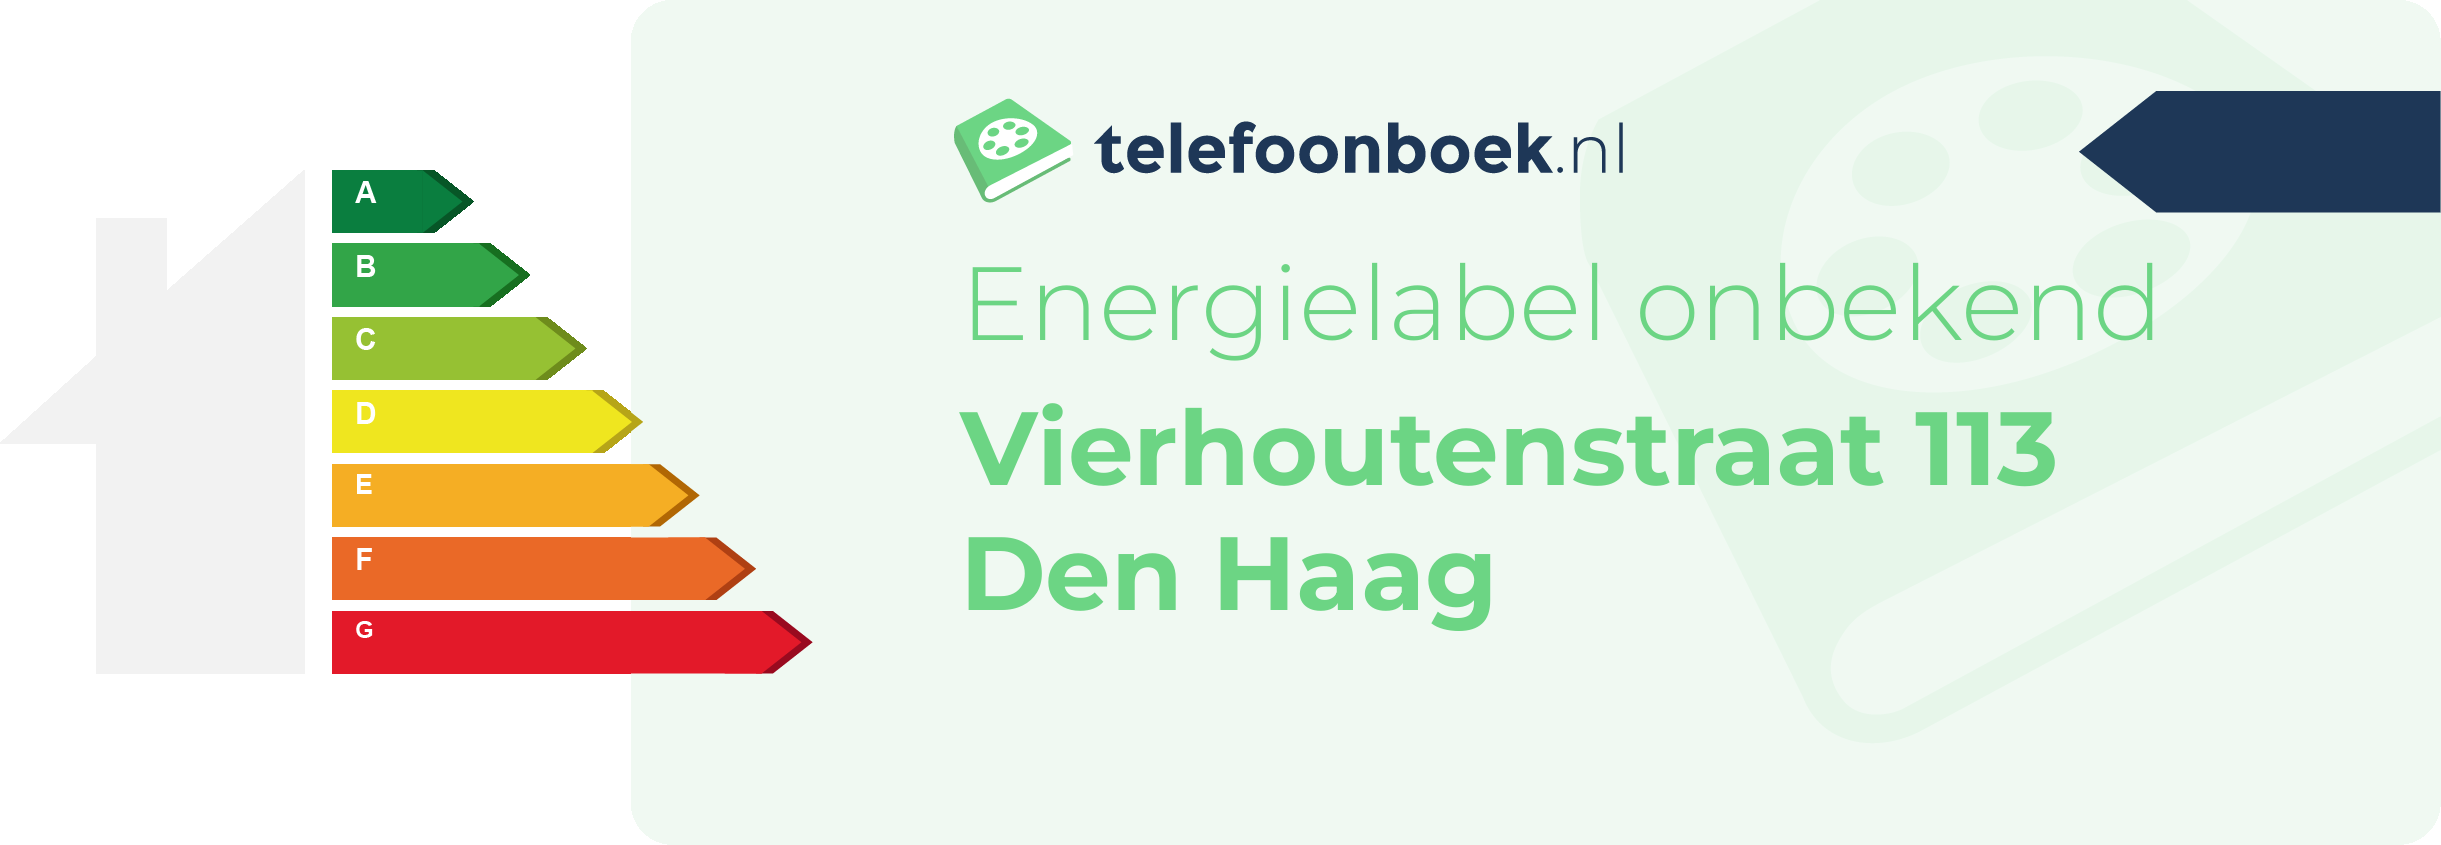 Energielabel Vierhoutenstraat 113 Den Haag